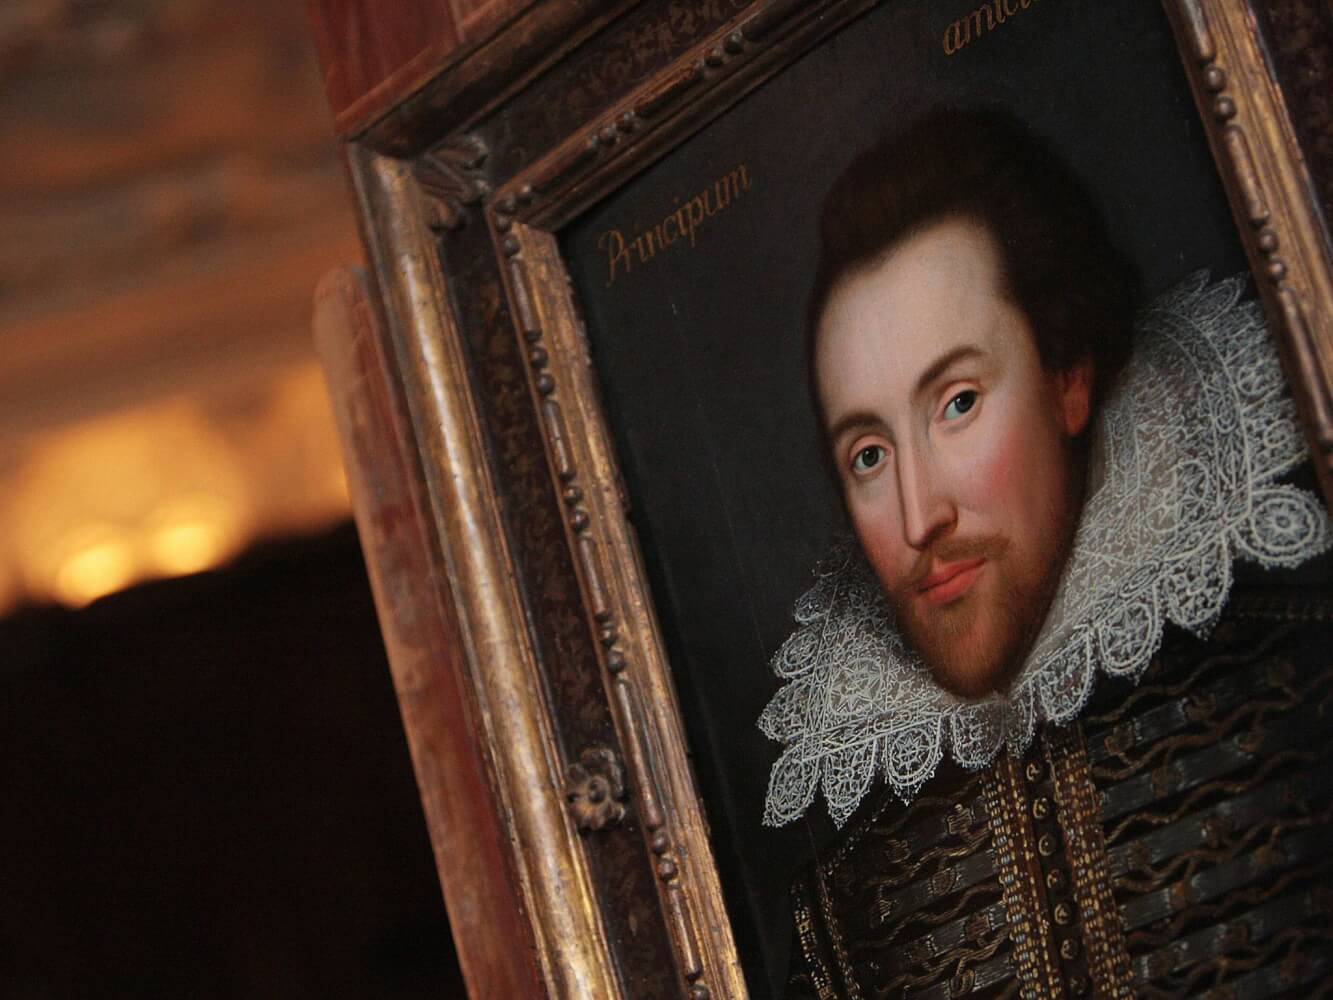 Тест на знание Шекспира: а вы начитанный человек?